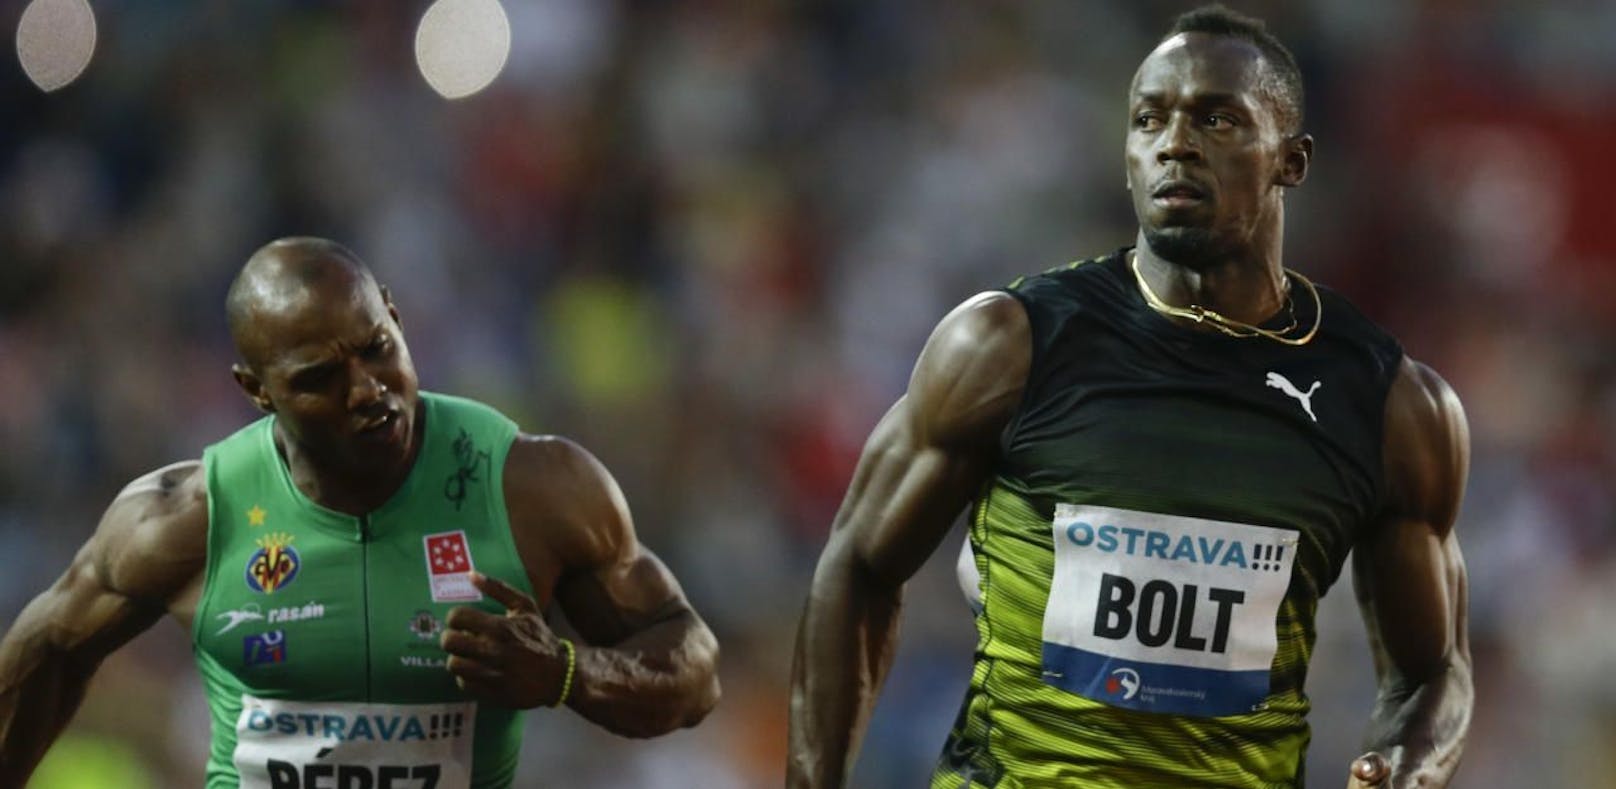 10,06 Sekunden! Bolt holt Sieg bei Abschieds-Show